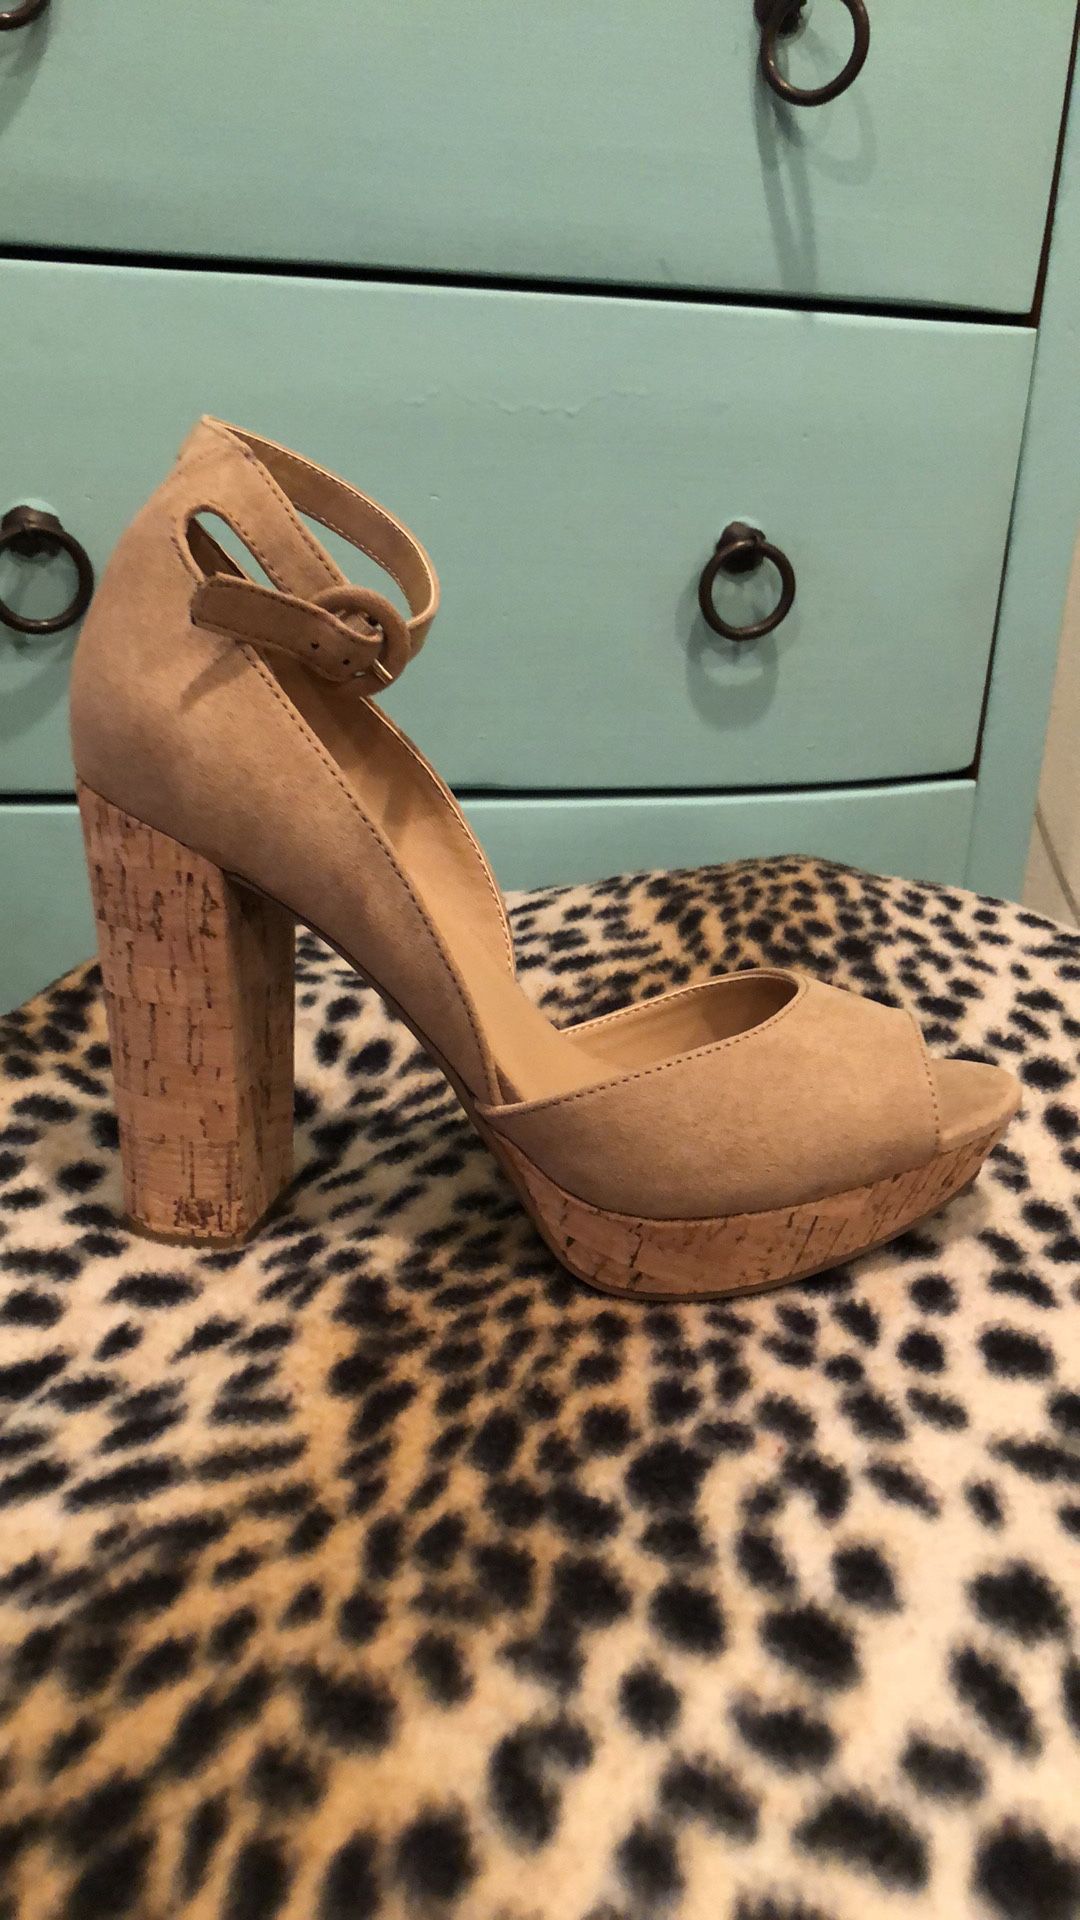 Brand new 4 Inch heels - cork - super comfortable